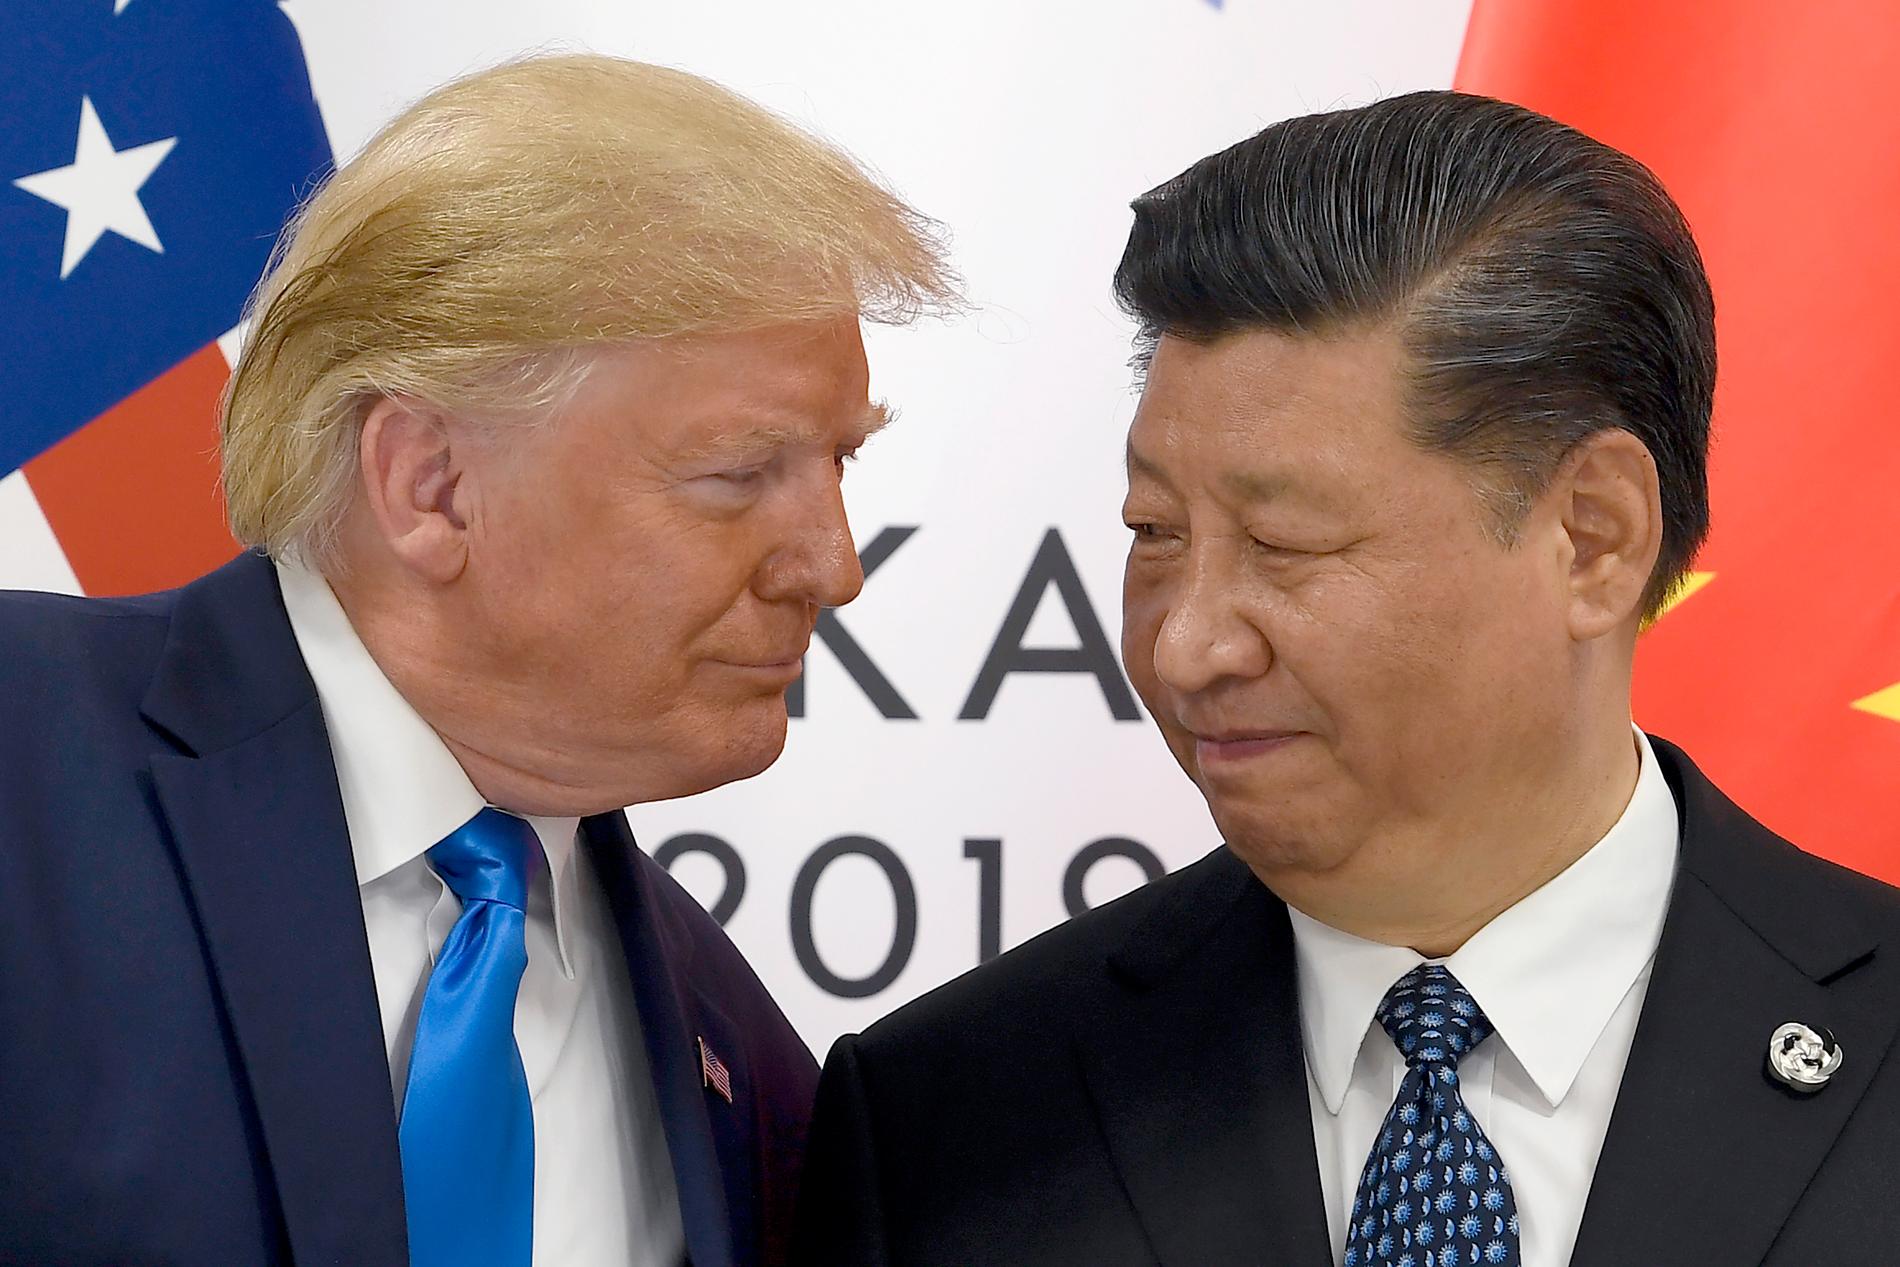 Donald Trump och Xi Jinping, vars relation inte varit den bästa under pandemins framfart. Arkivbild.